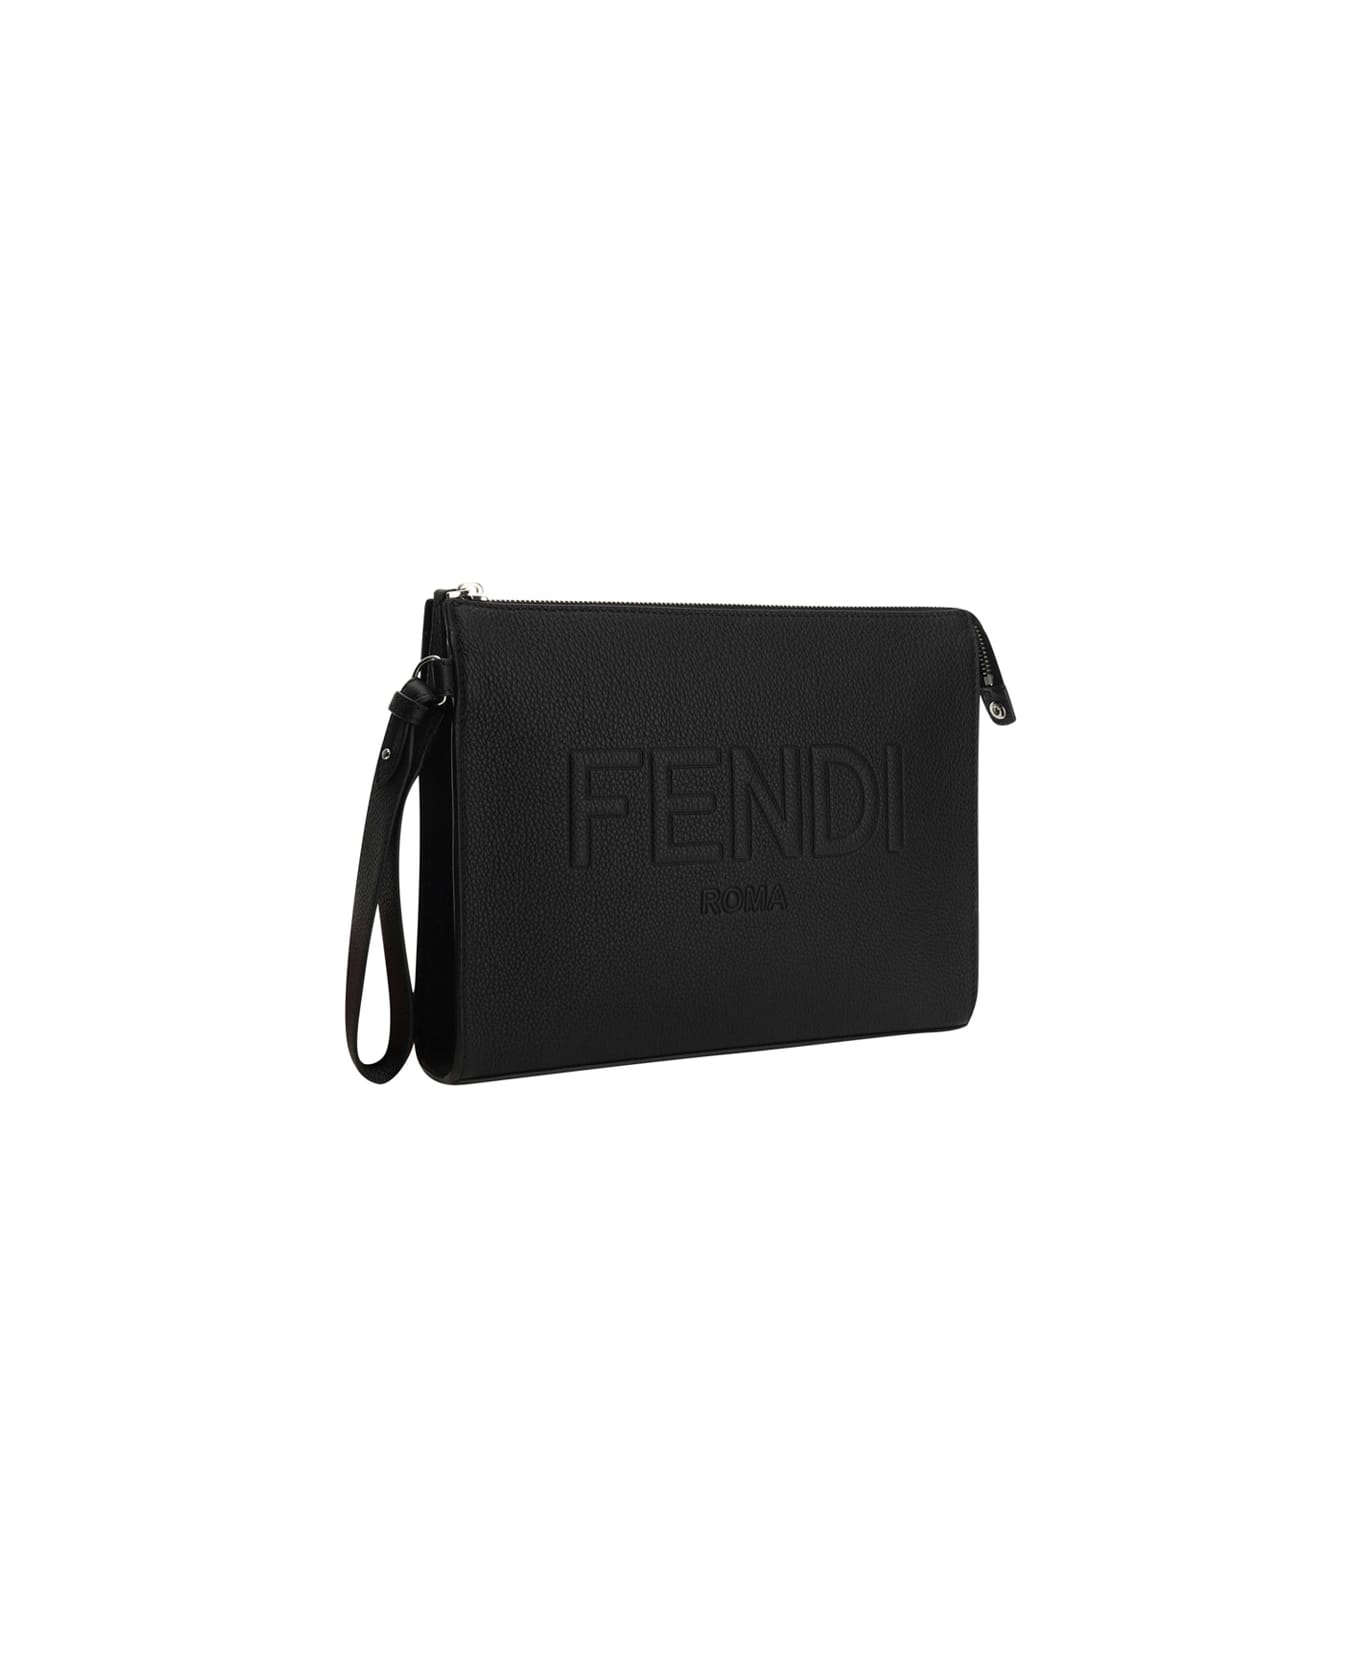 Fendi Black Leather Pouch - Nero+palladio